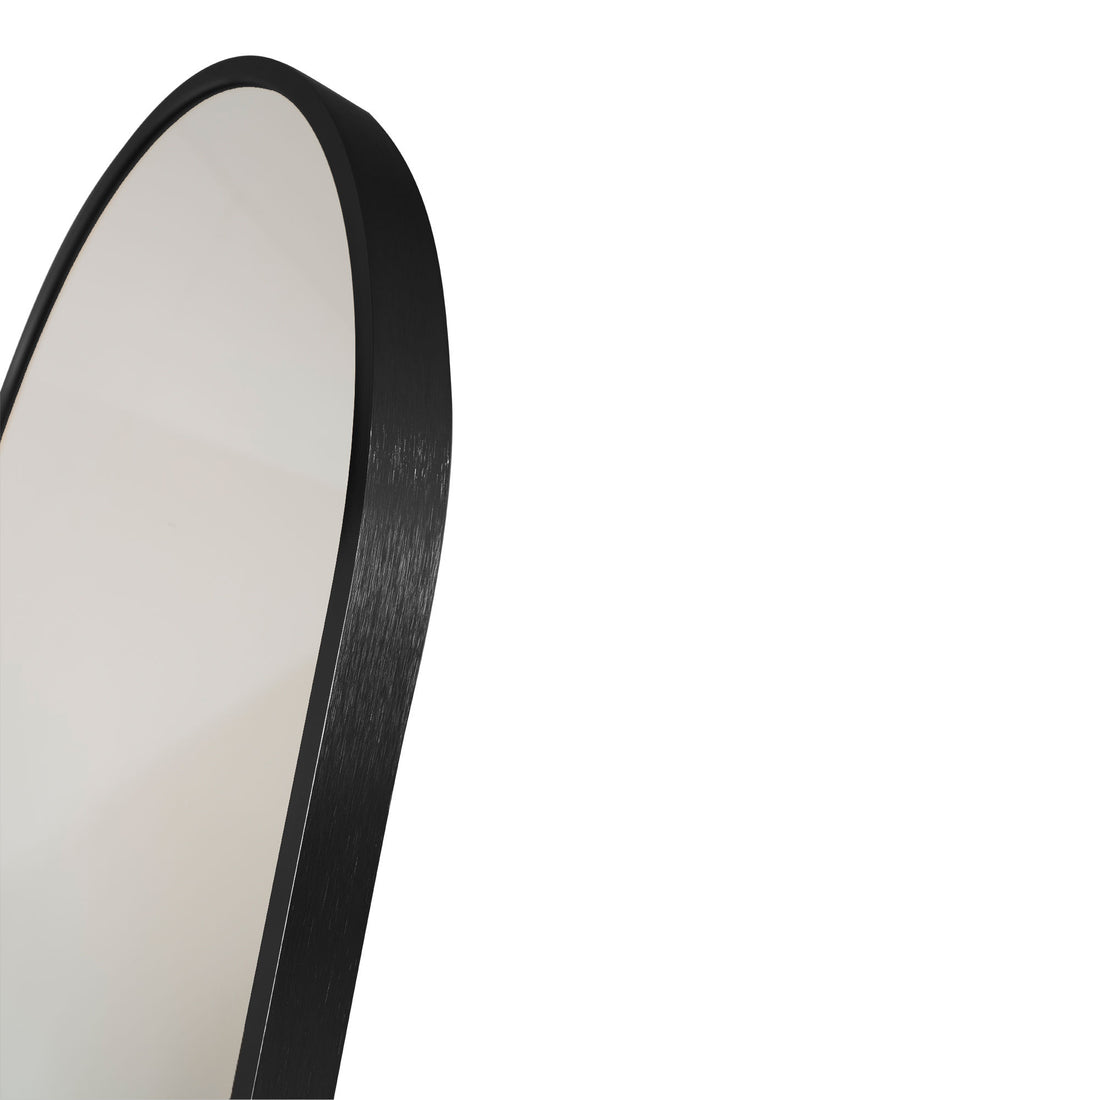 Madridspiegel - Spiegel im Aluminium, schwarz, 40x150 cm - 1 - PCs